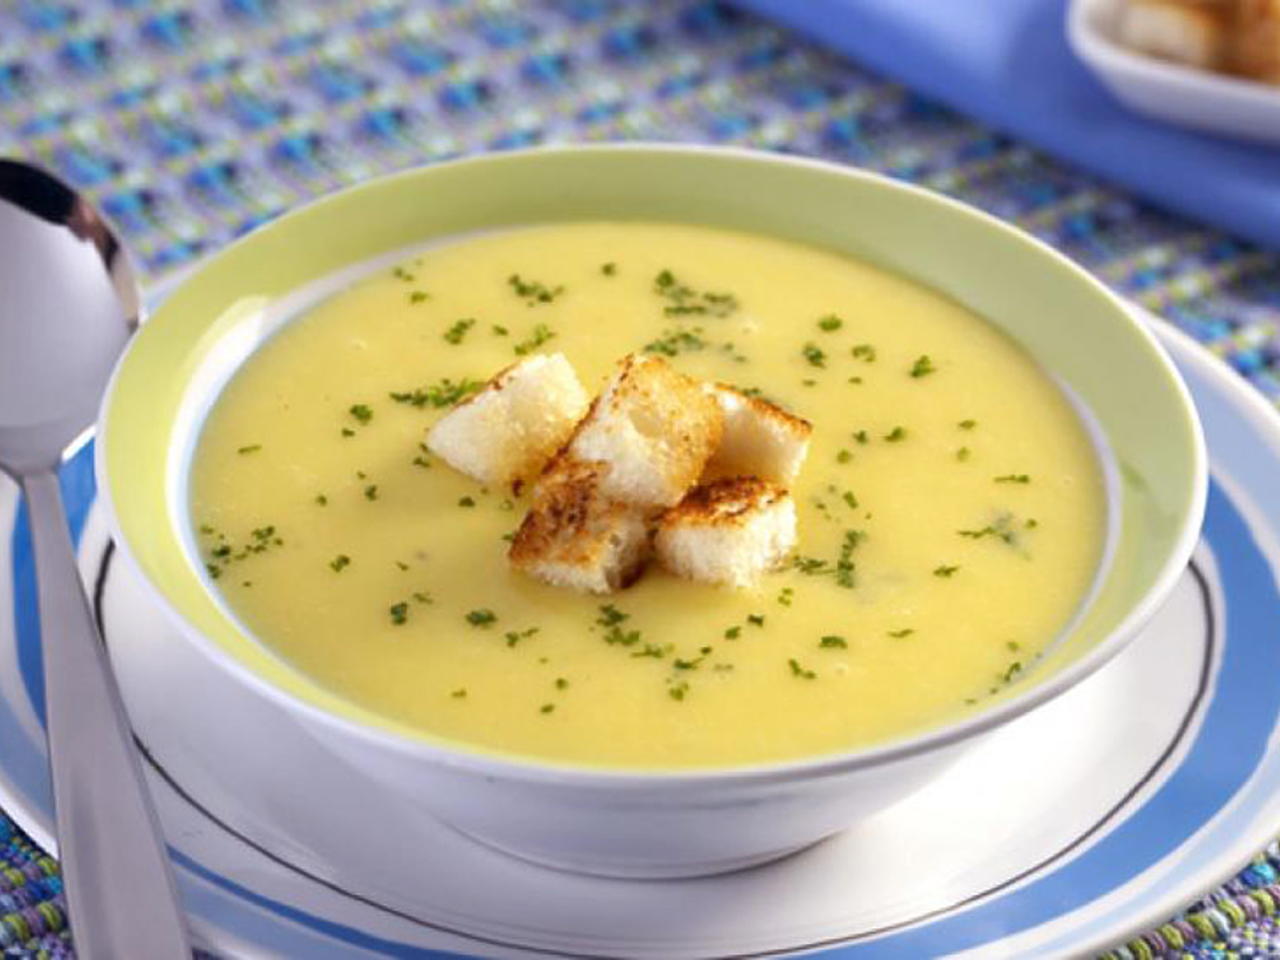 En los días frescos, la sopa es una excelente opción.